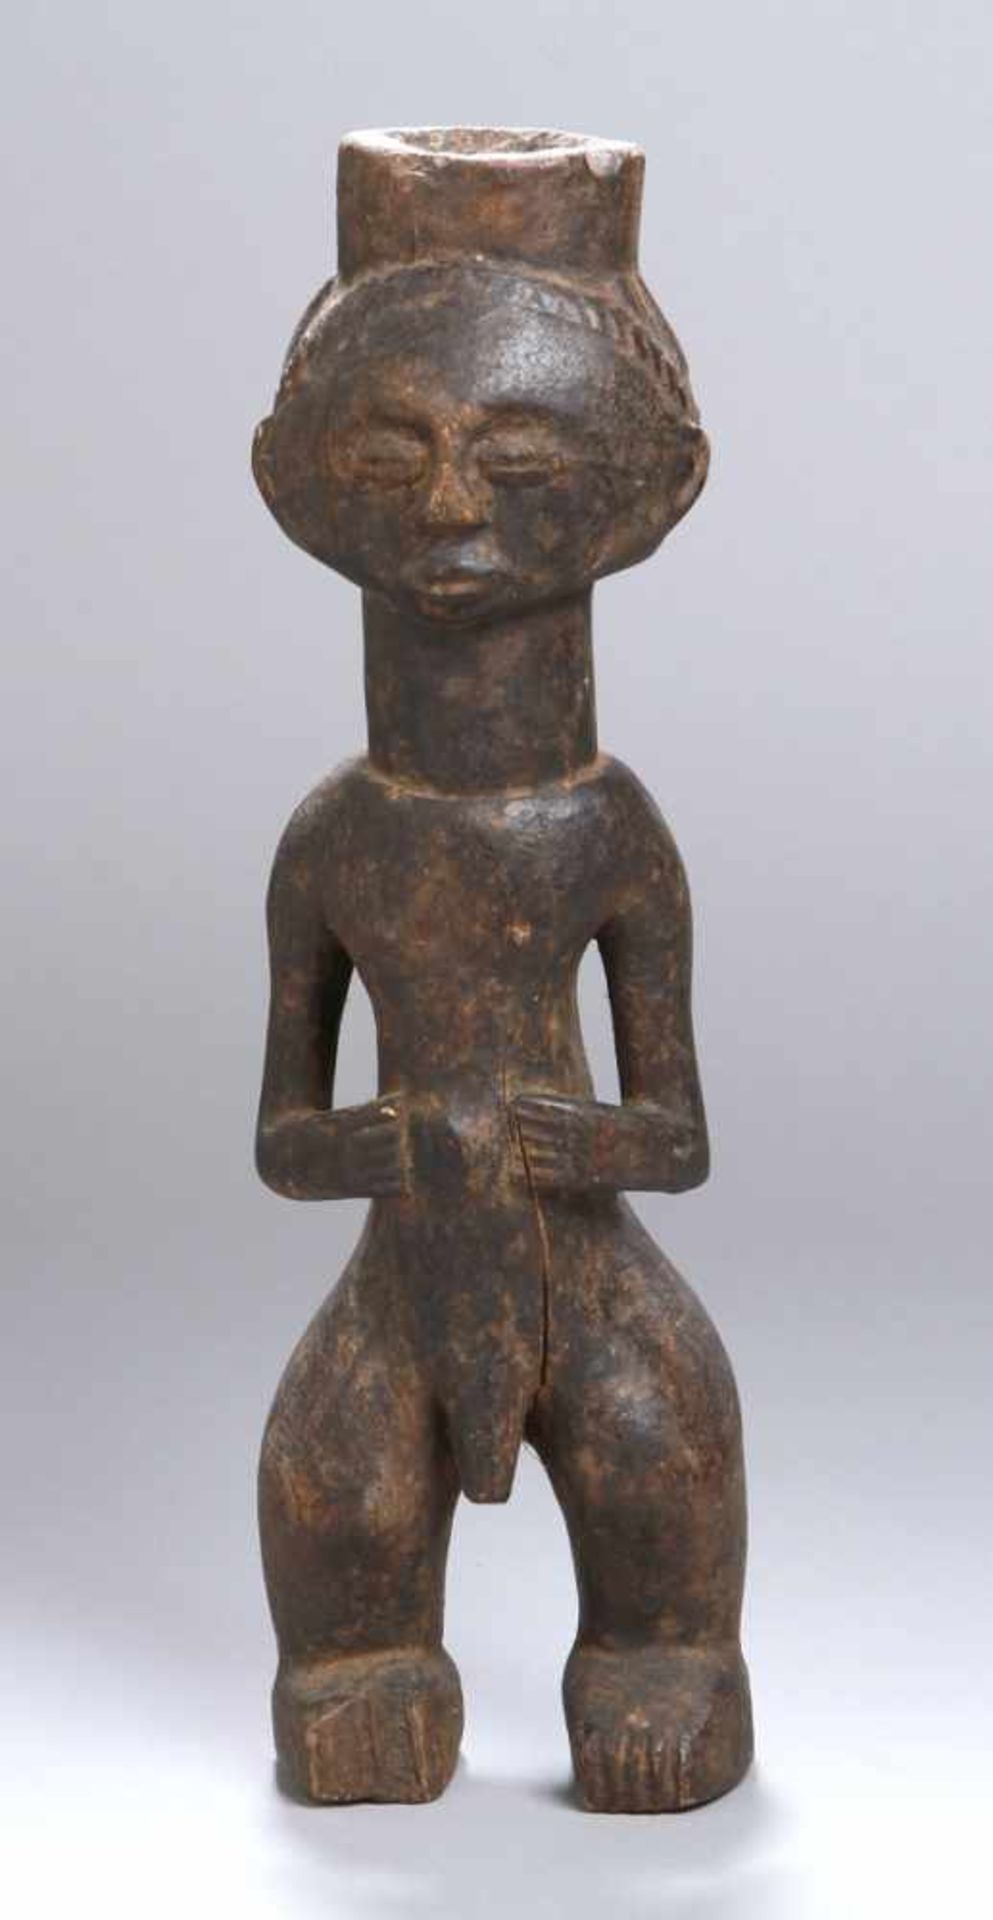 Ritual-Figur, Luba, Kongo, stark reduzierte, stehende, männliche Darstellung mit auf Bauchabgelegten